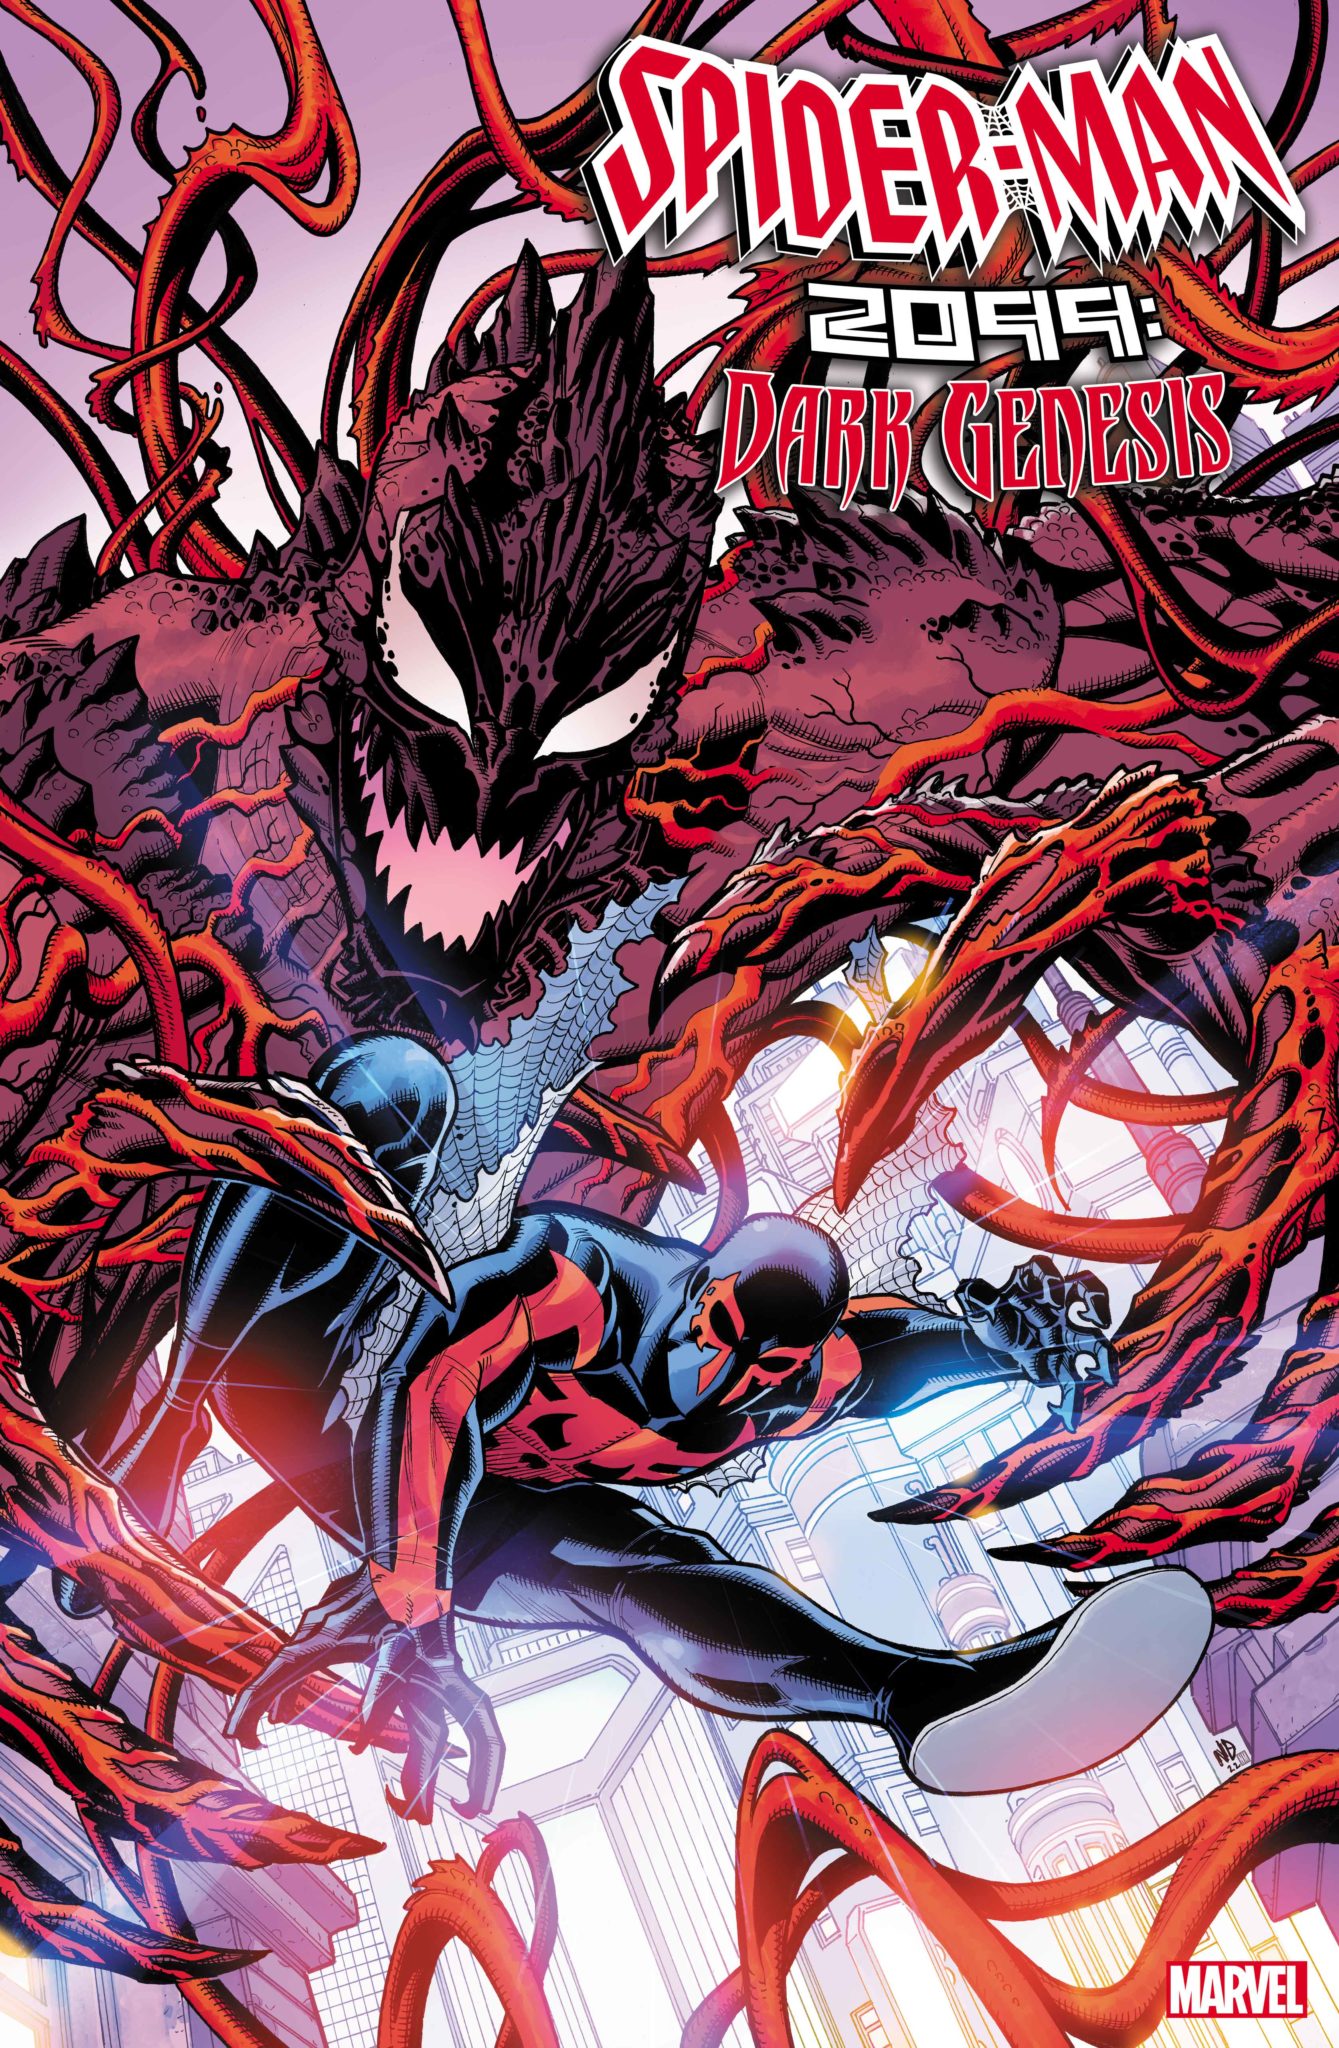 SPIDER-MAN 2099: DARK GENESIS #1 cover